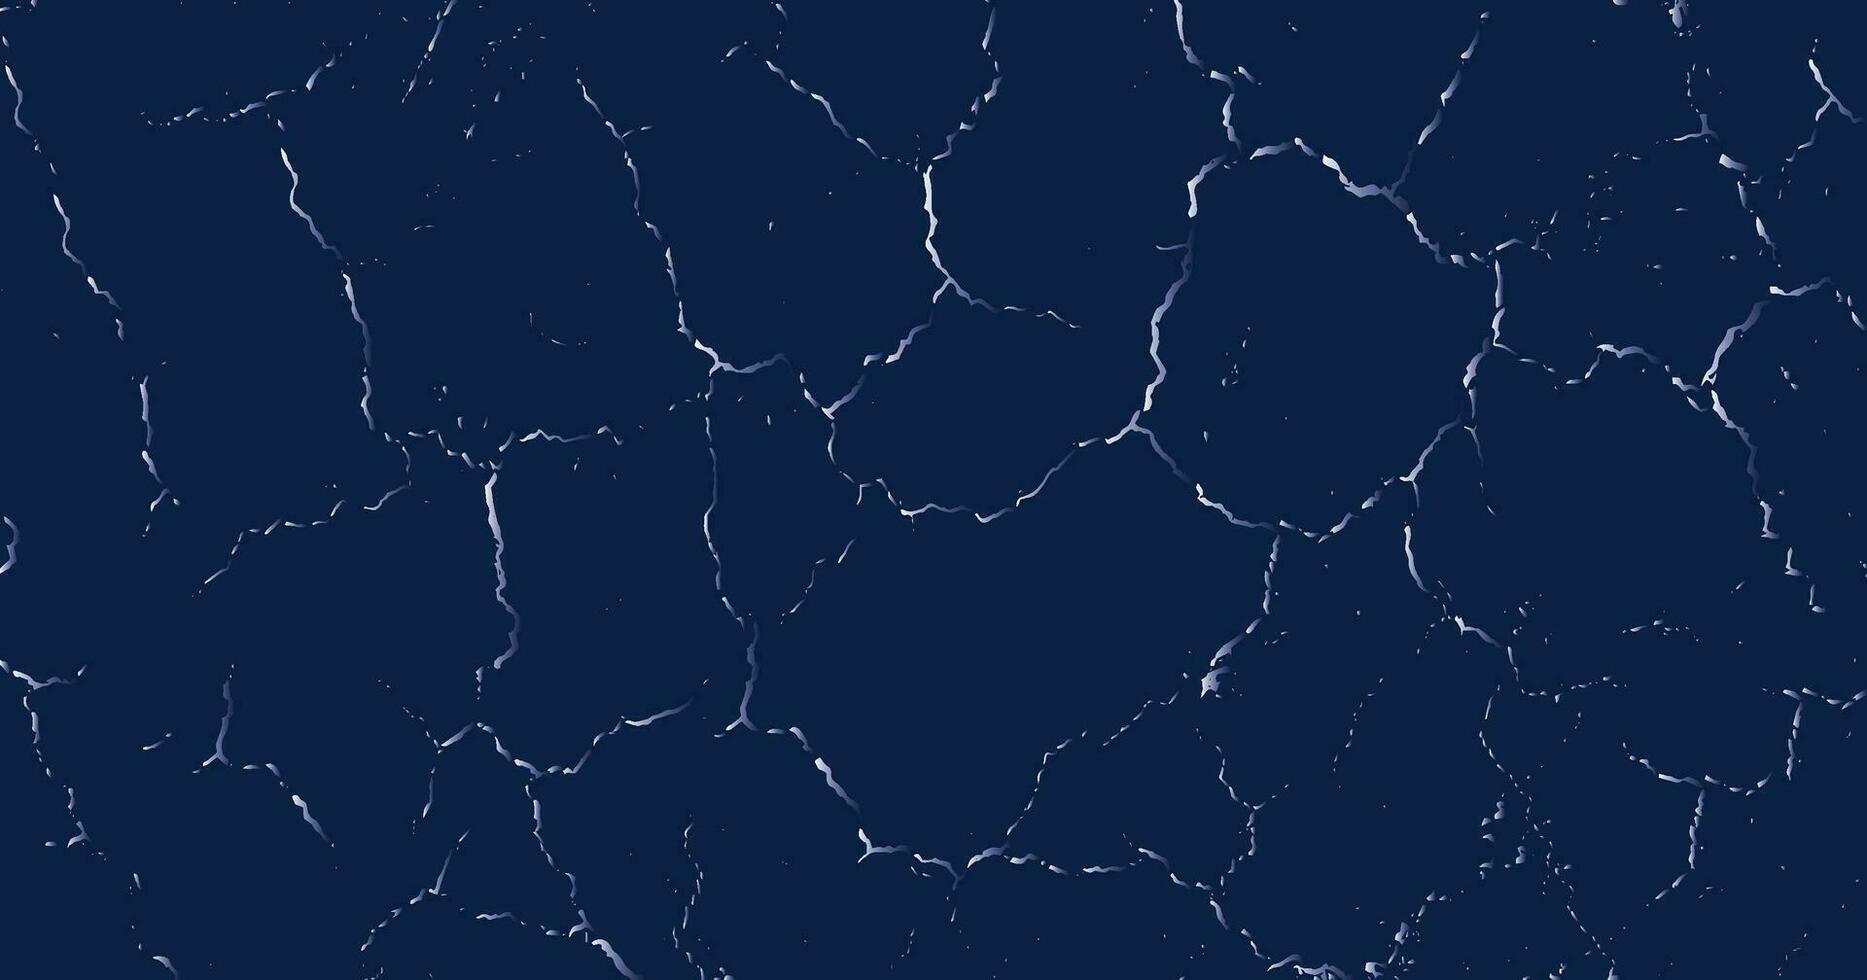 vit grunge effekt på årgång blå lutning bakgrund, jordbävning knäckt, bruten glas, virvlar grunge, bruten textur, textur grunge, grunge gräns, grunge textur, grunge överdrivet, vektor